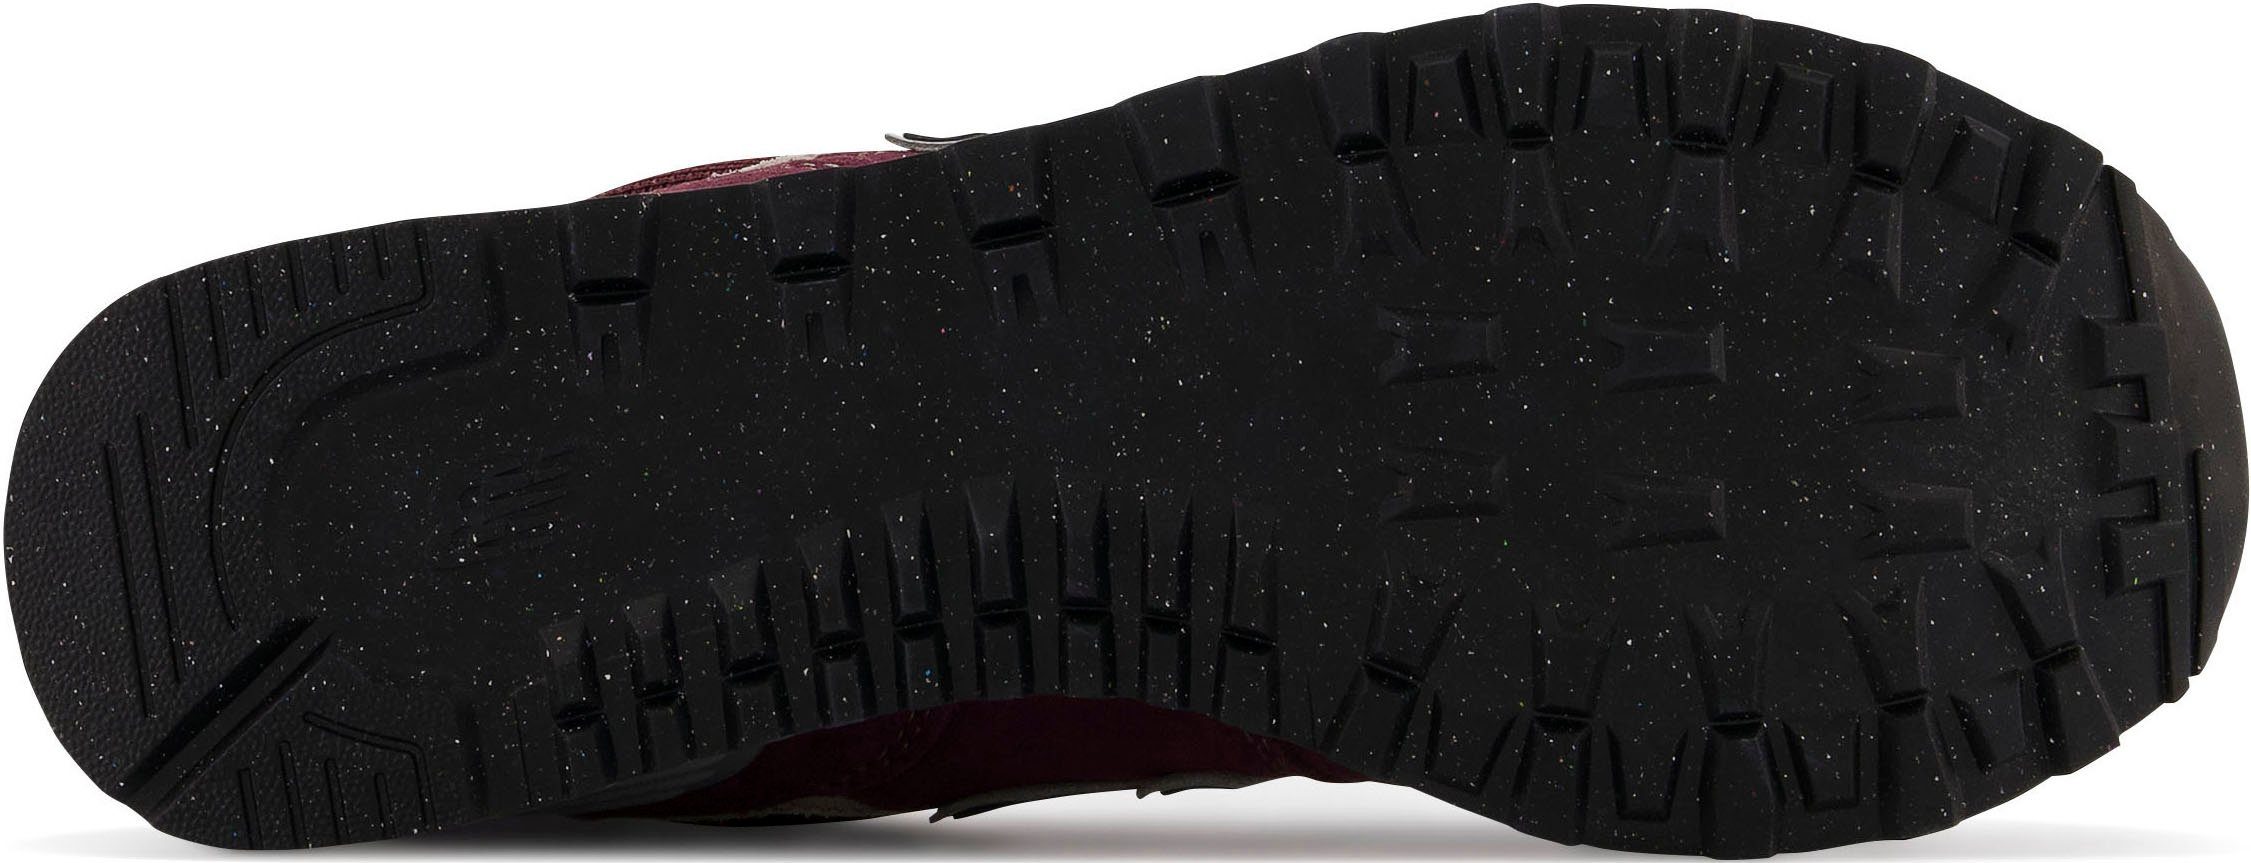 Balance New WL574 bordeaux-grau Core Sneaker